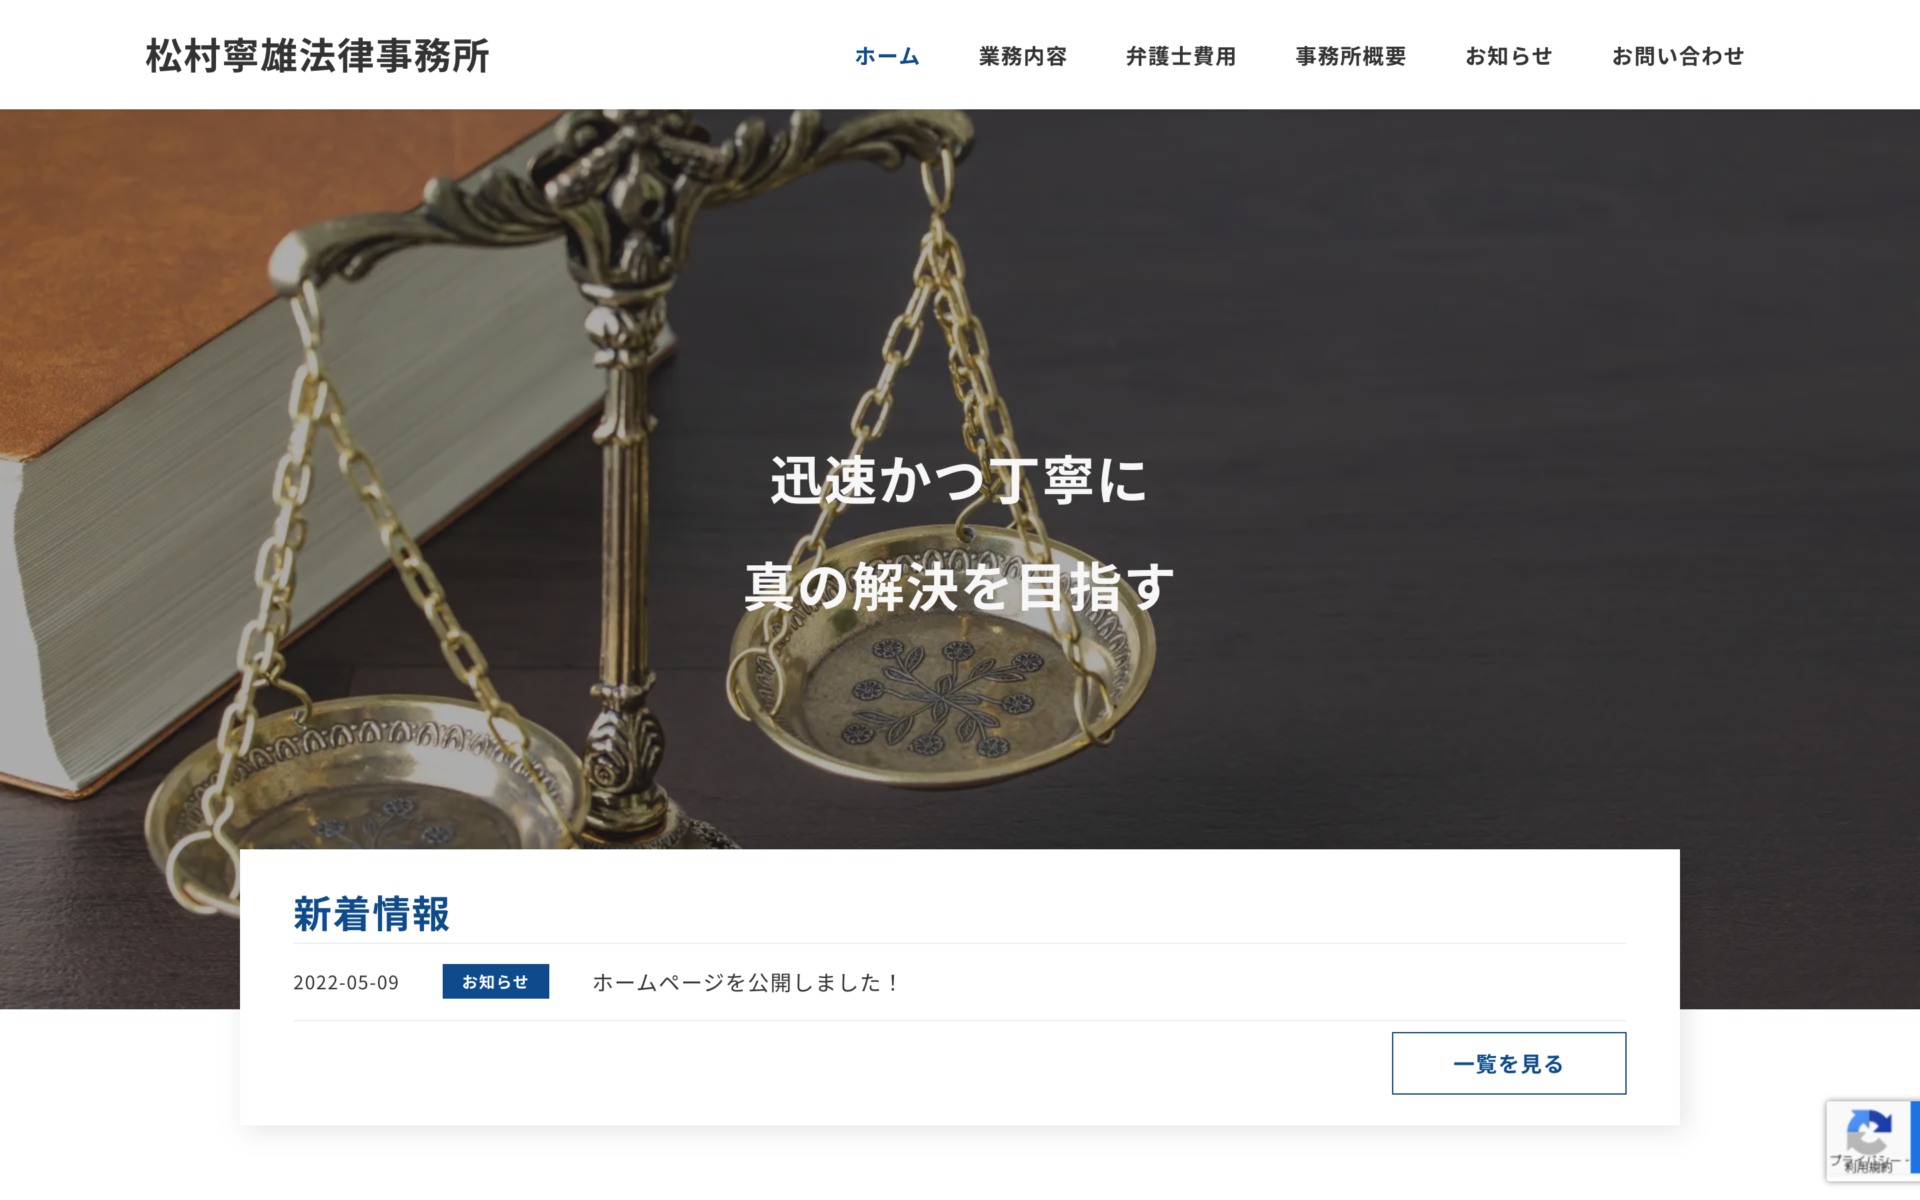 松村寧雄法律事務所様のコーポレートサイトを制作しました。